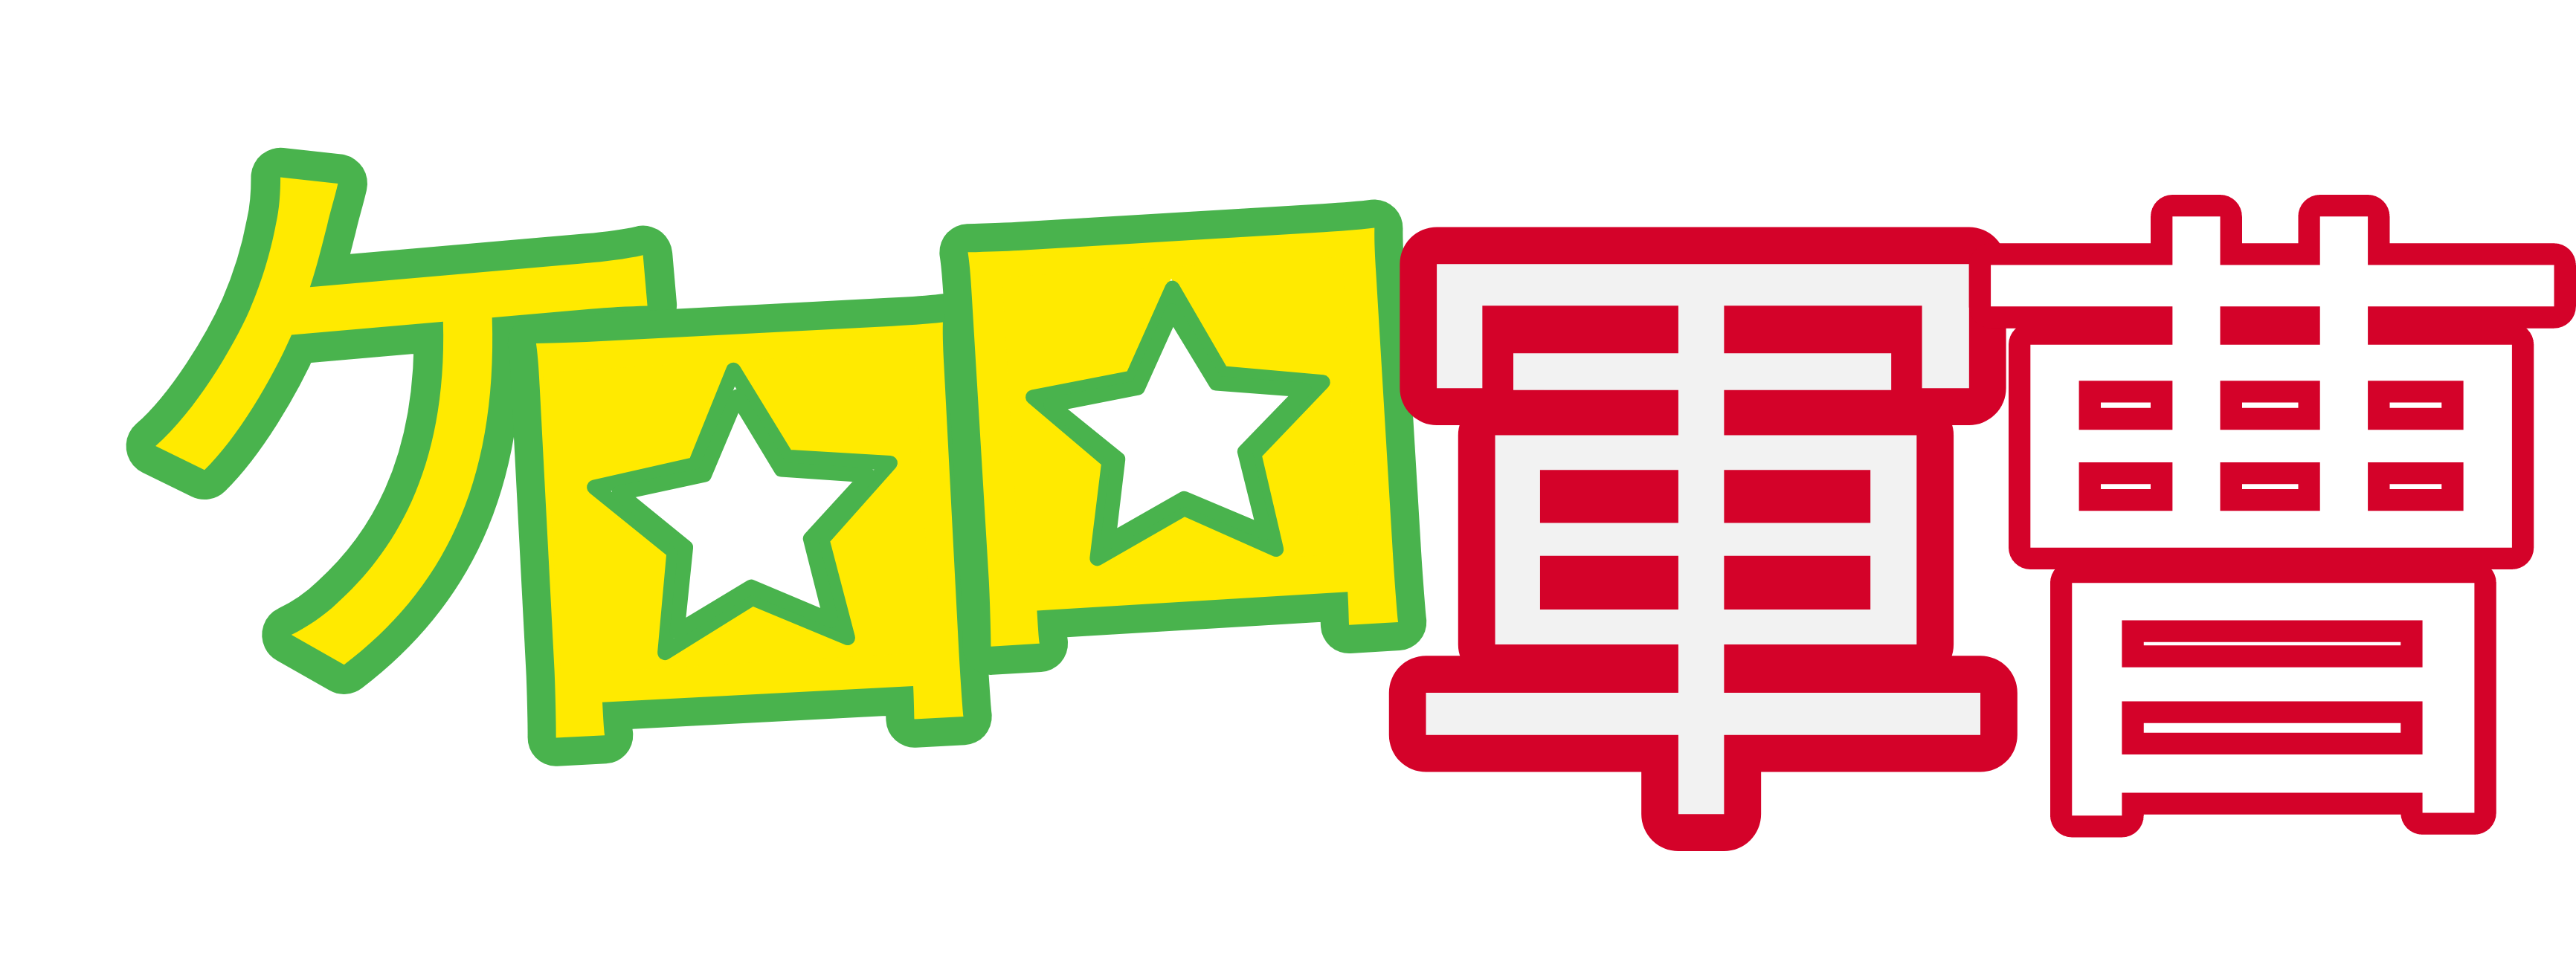 Keroro Gunso (Logo) by Z A Y N O S